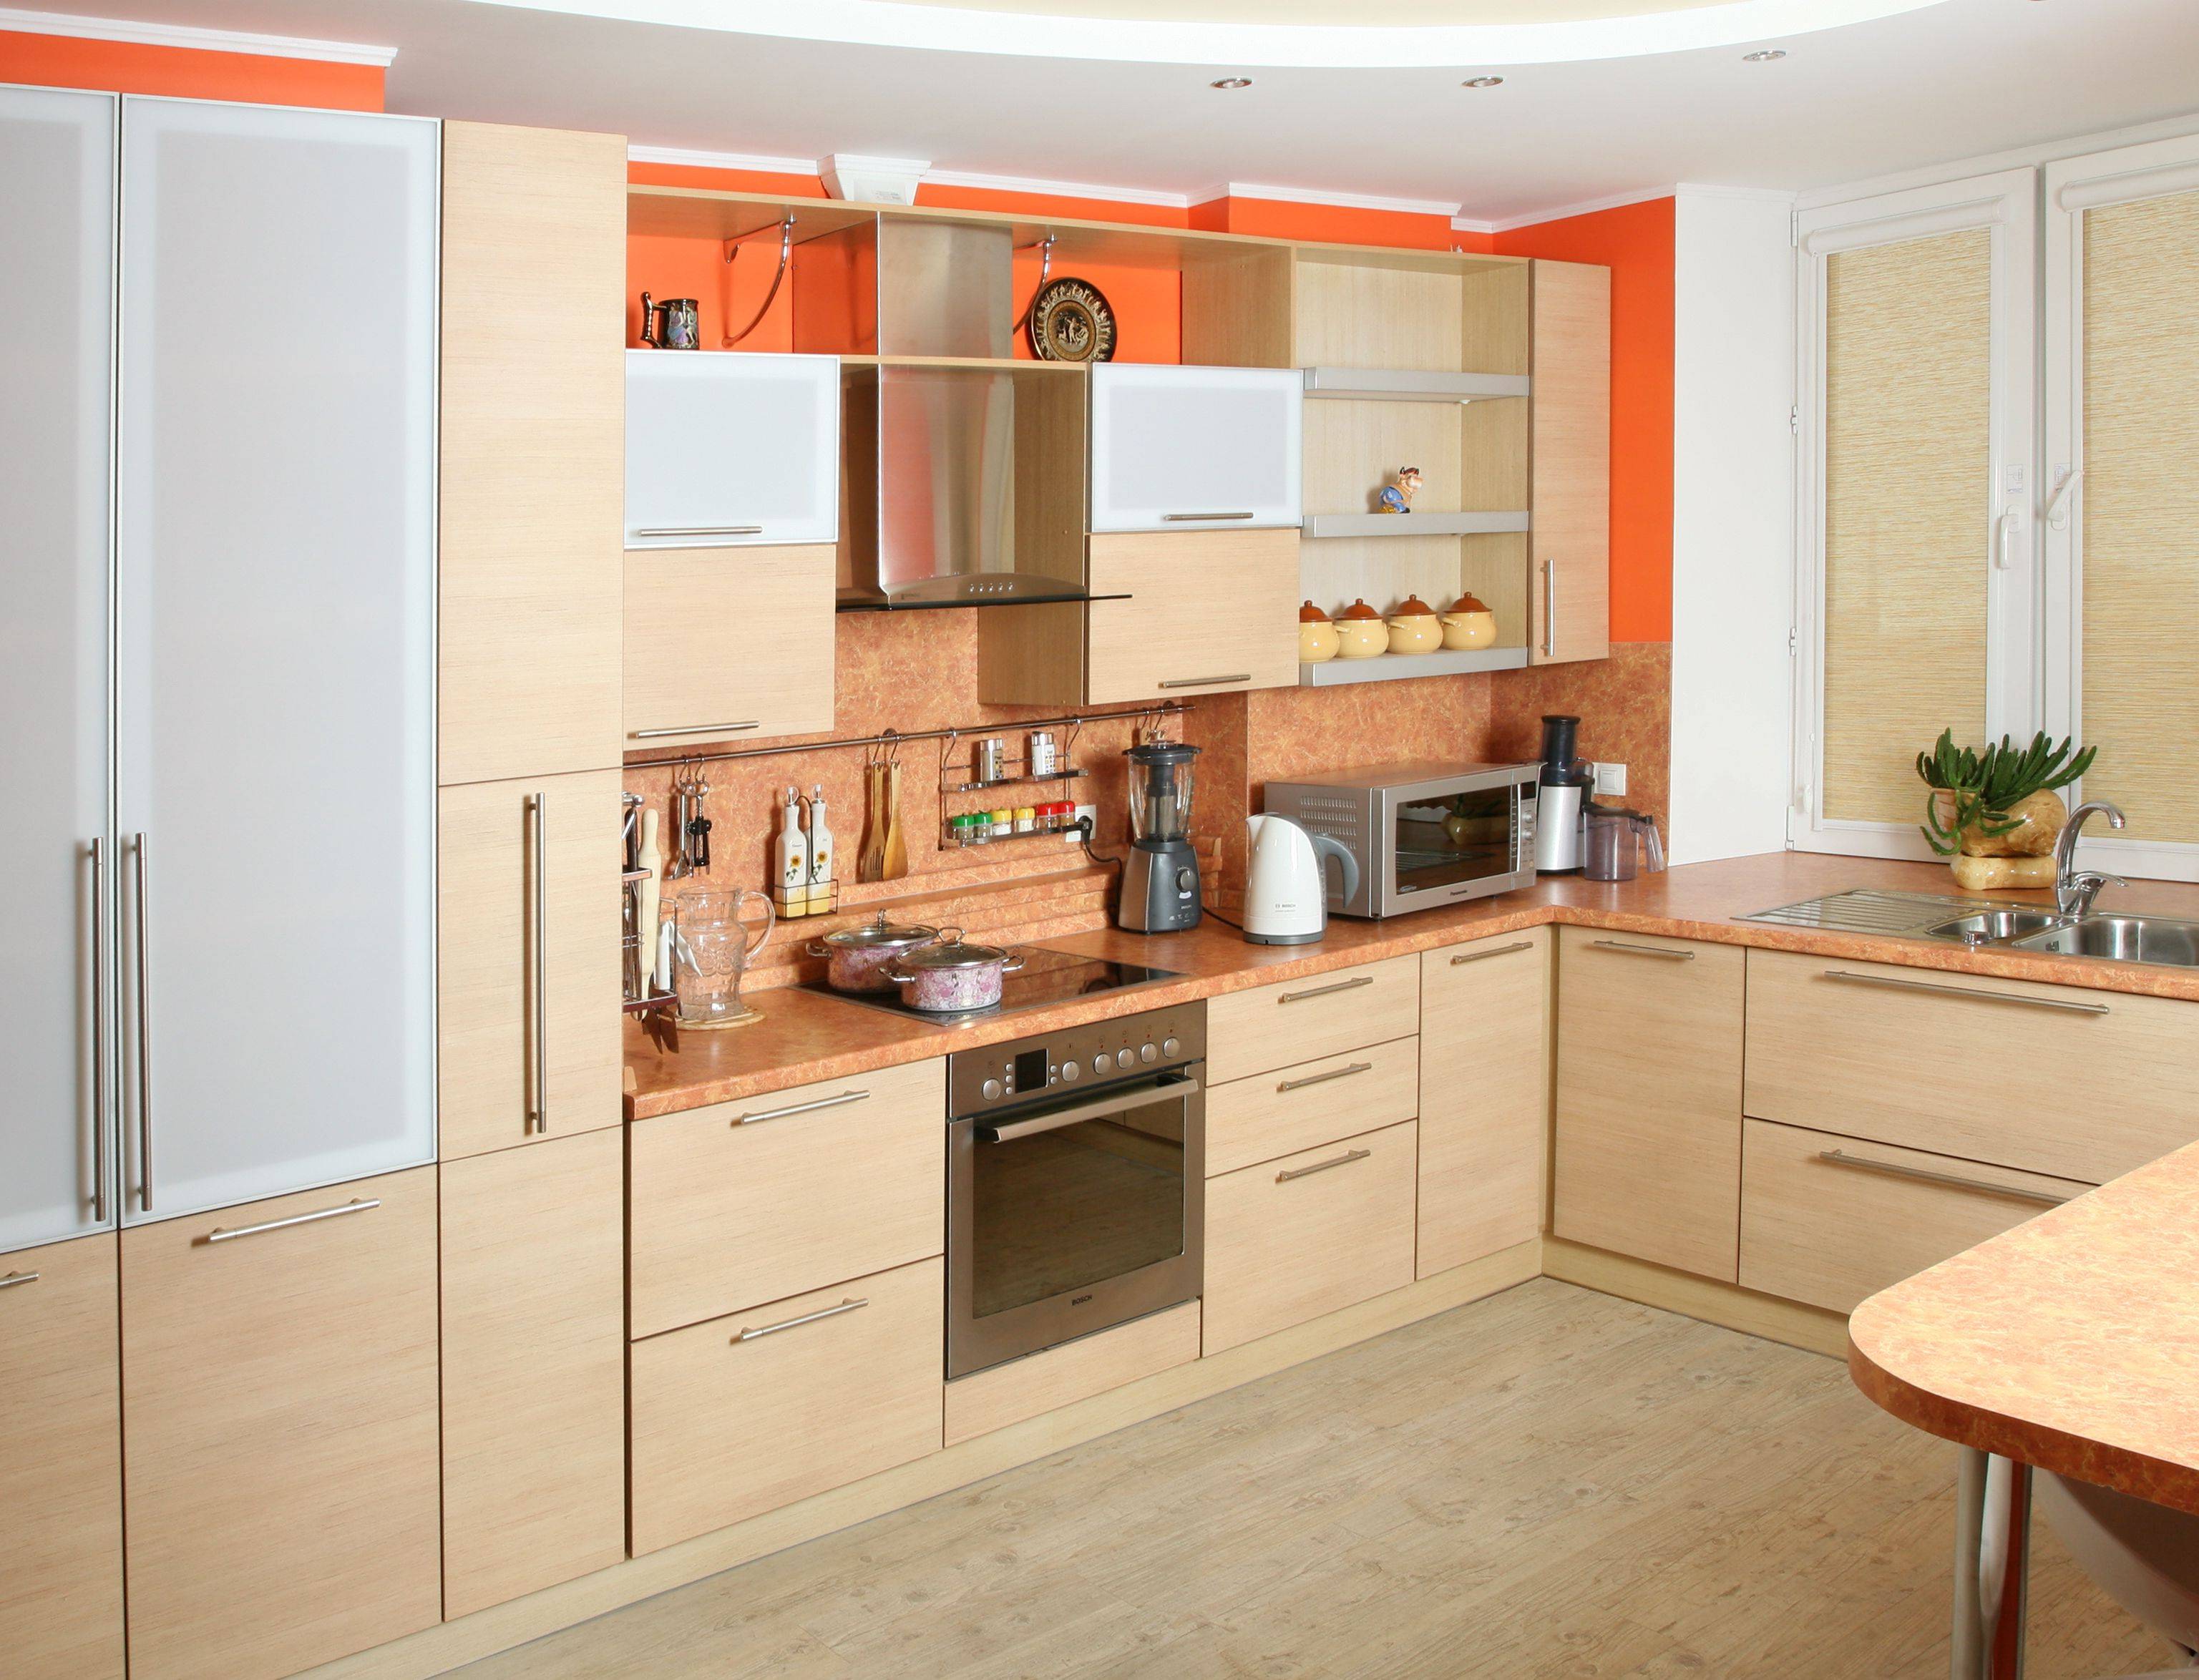 Форум какая кухня лучше. Кухонный гарнитур. Персиковая кухня в интерьере. Кухня персикового цвета. Персиковый цвет в интерьере кухни.